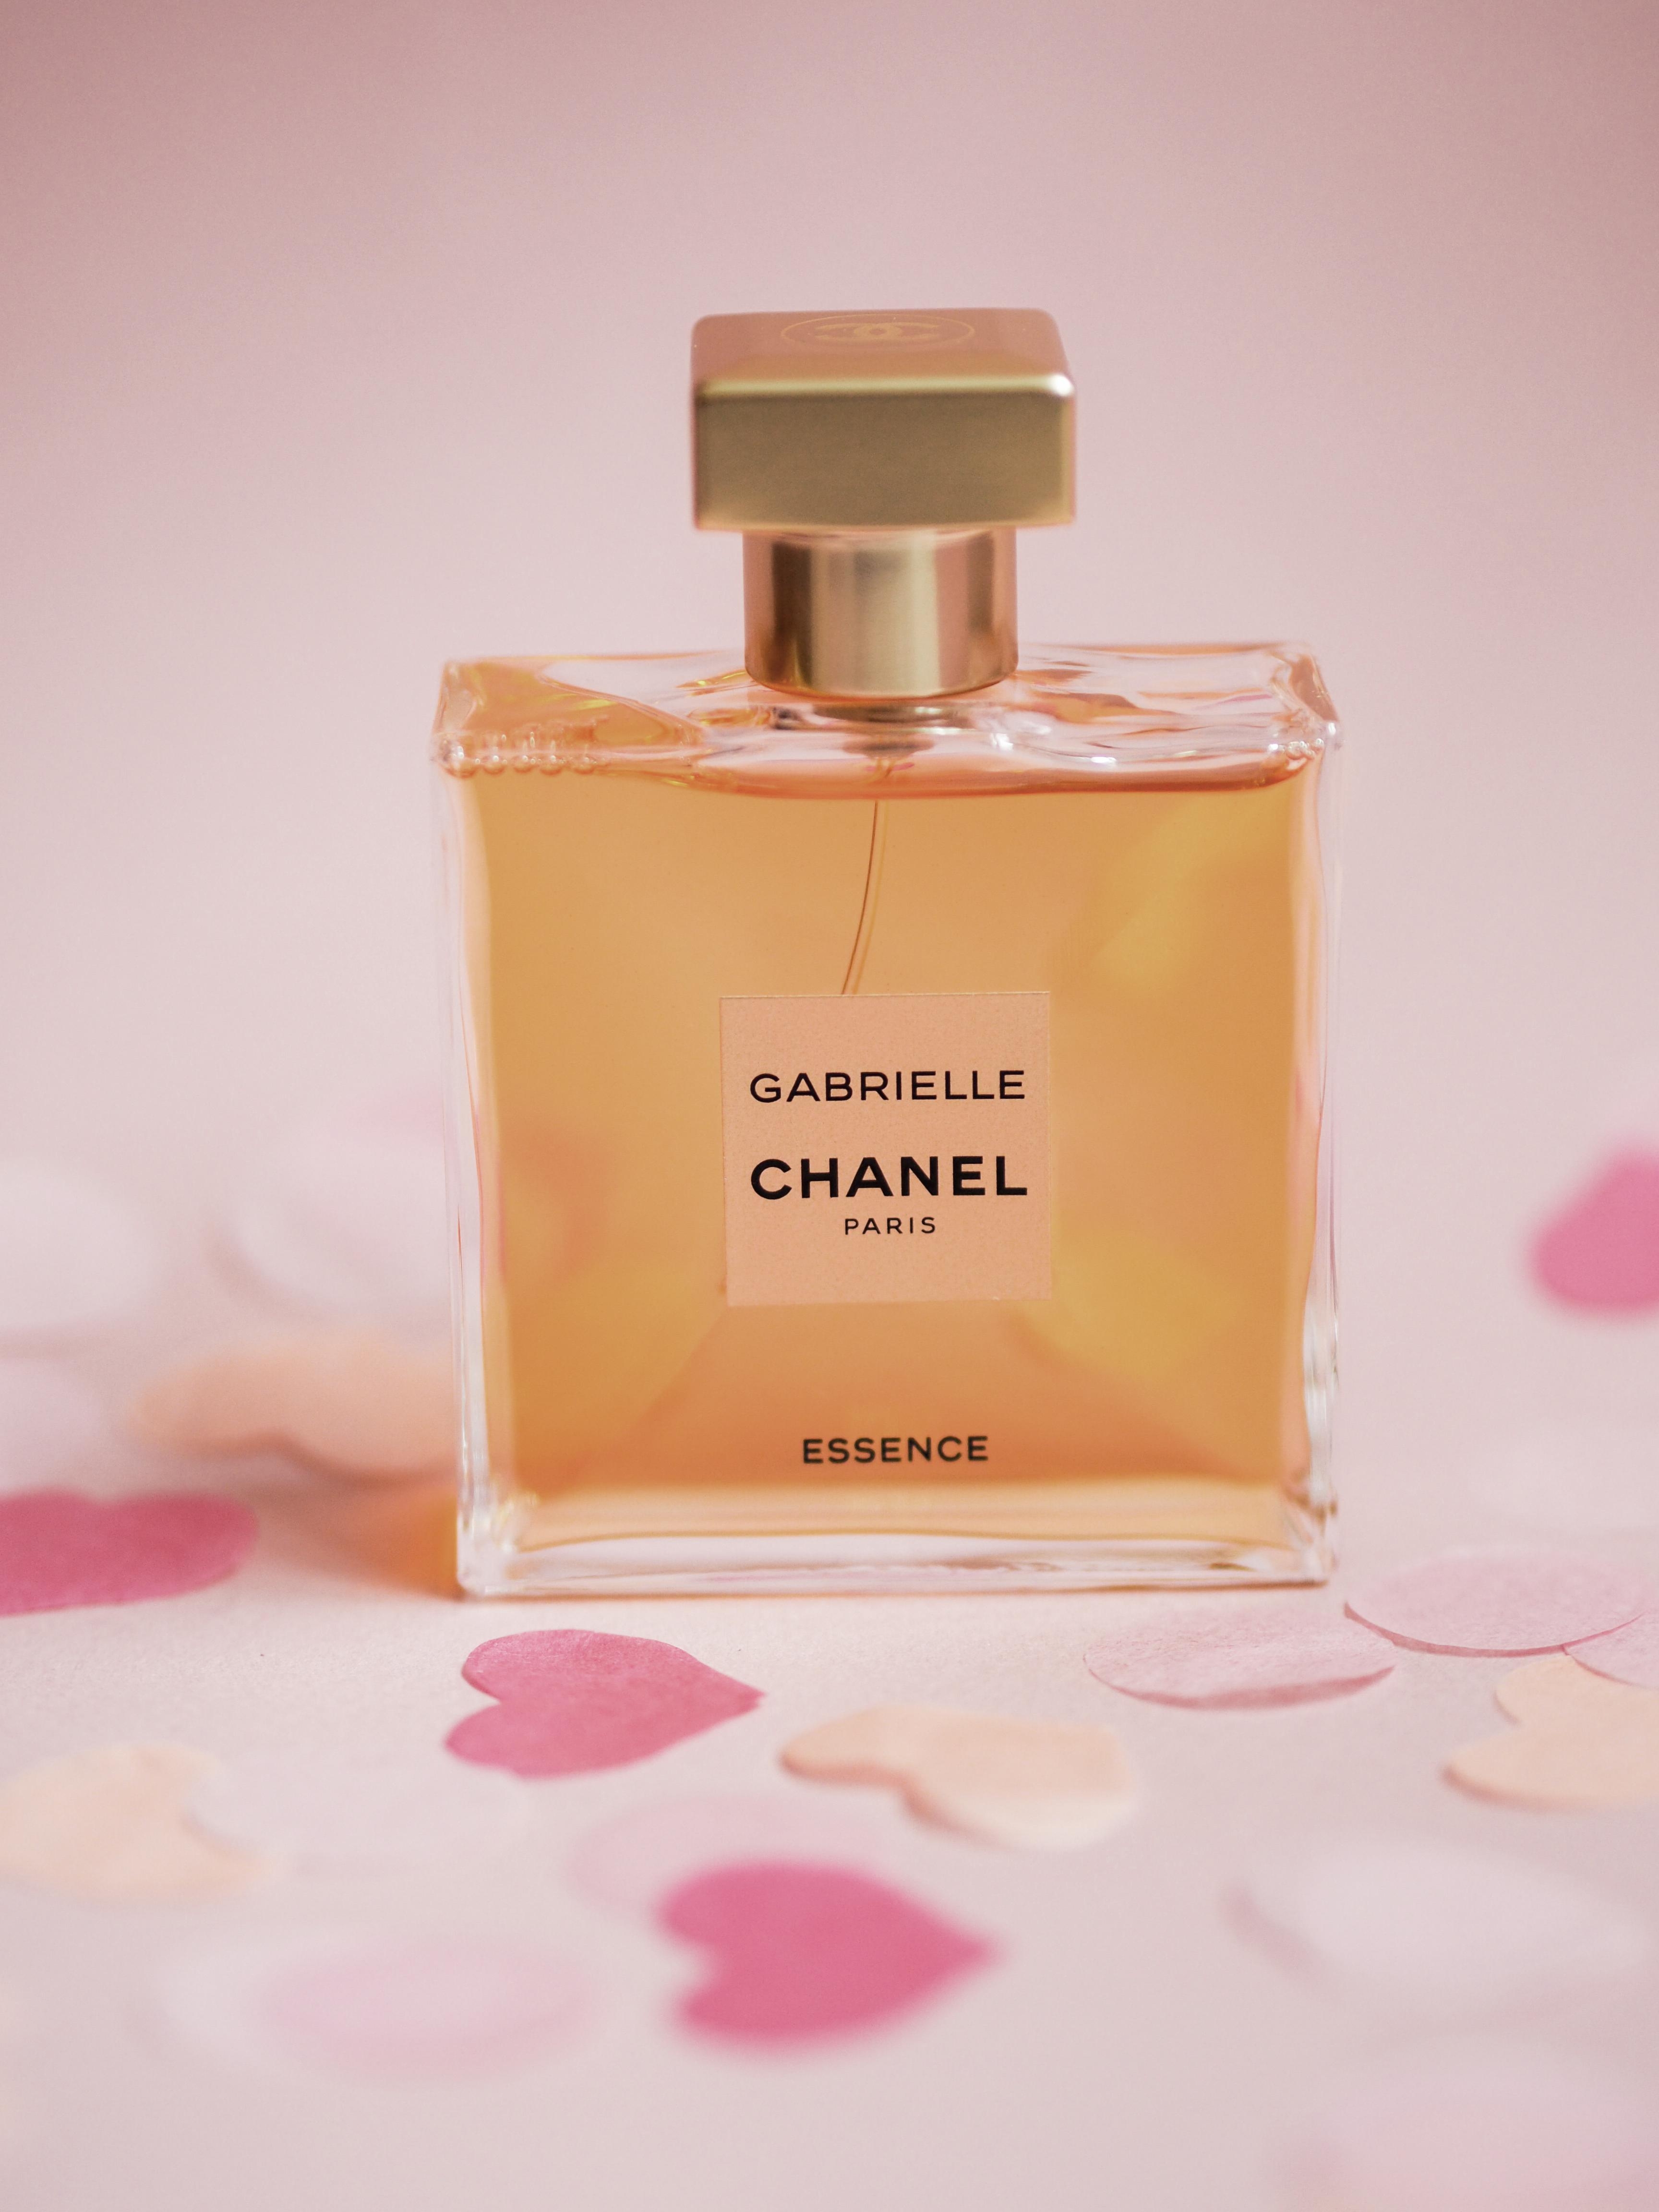 "CHANEL GABRIELLE Essence" - der Duft einer selbstbestimmten Frau. Blumig und voller Leuchtkraft #loveisintheair #chanel